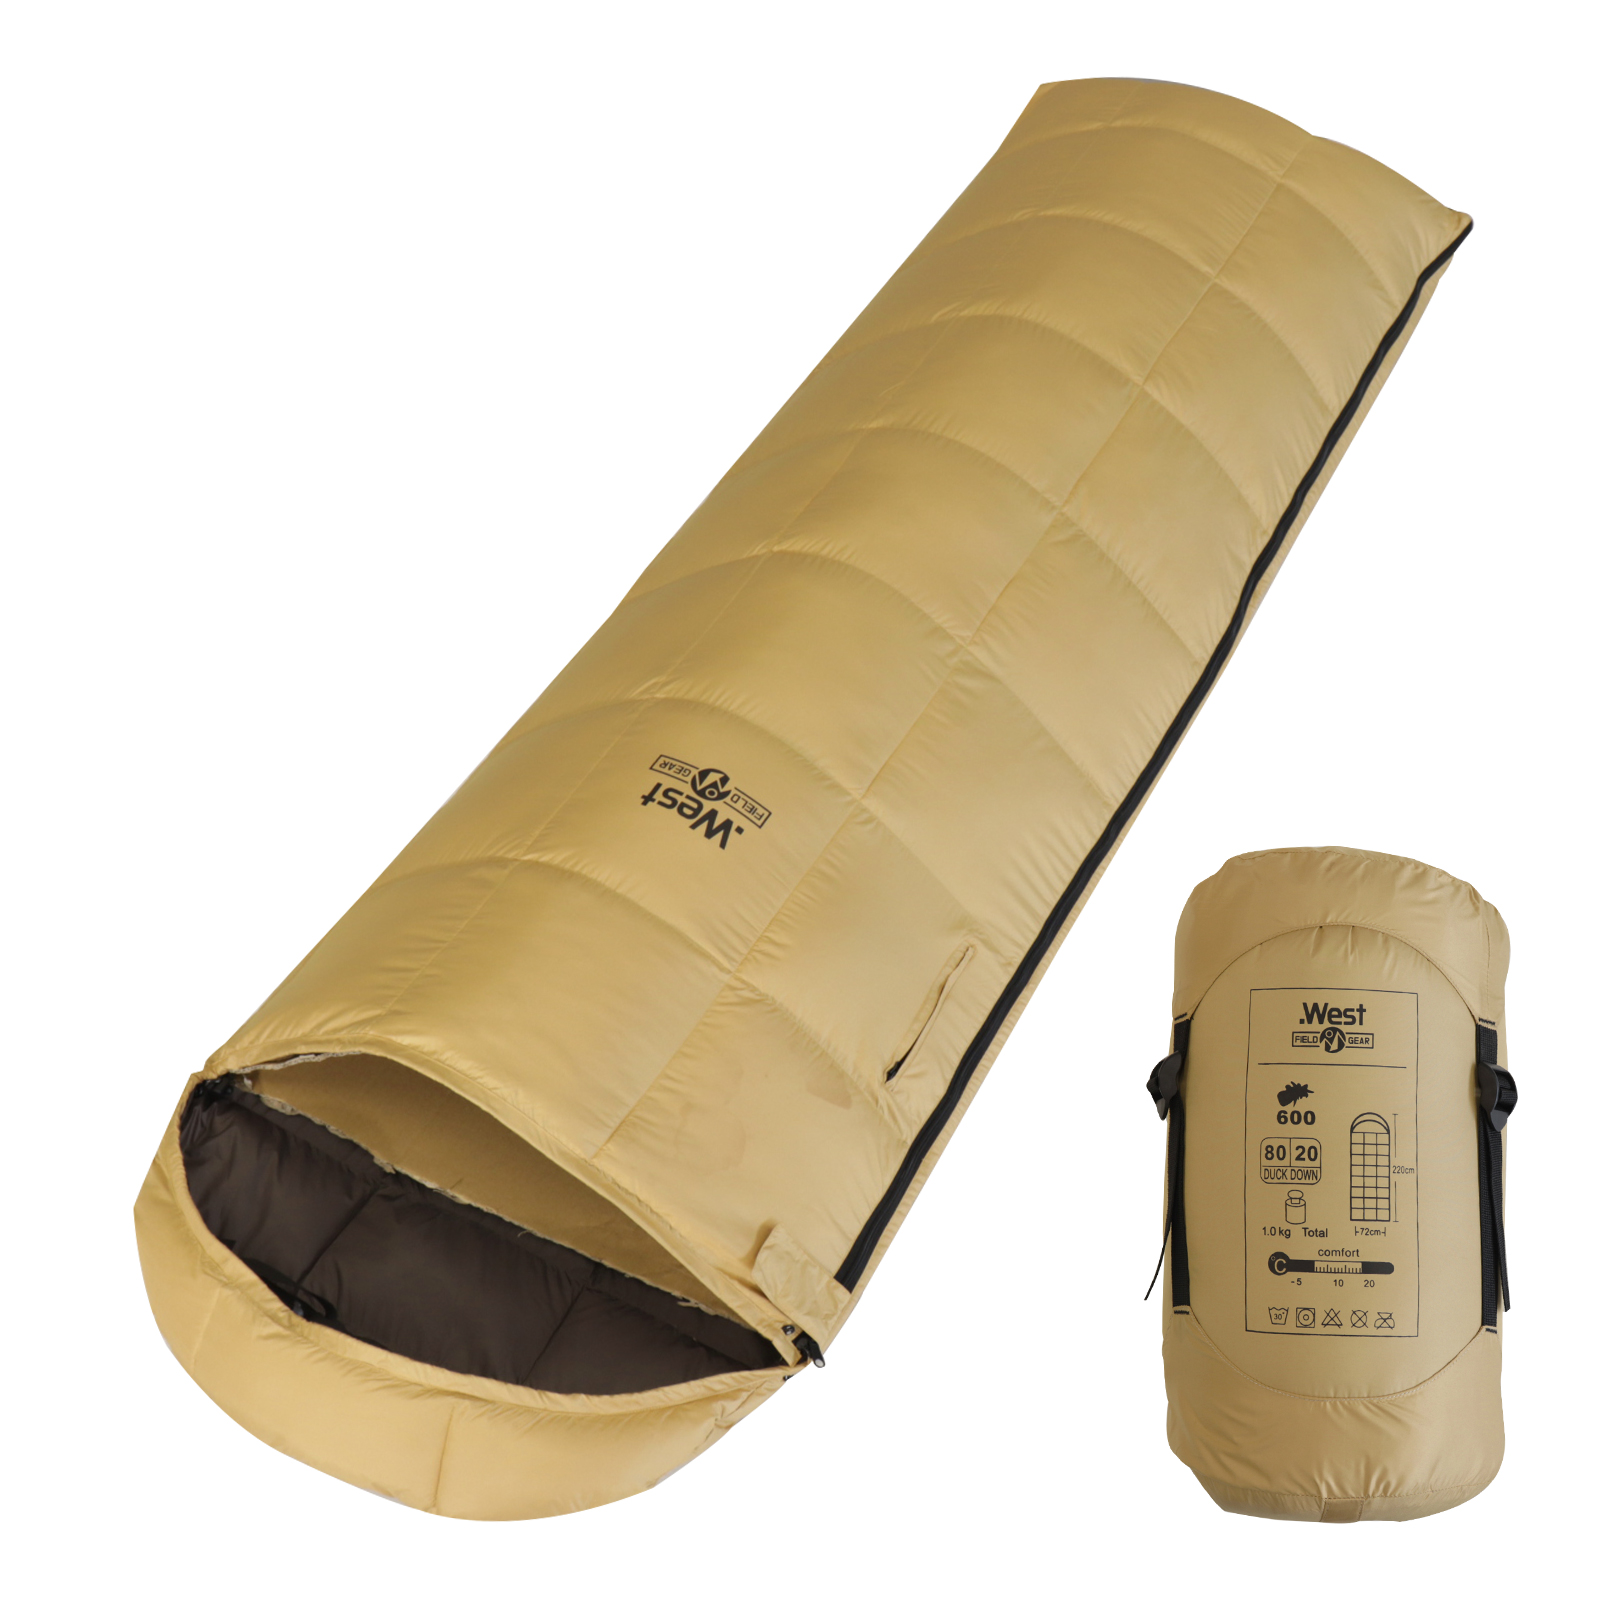 .West 寝袋 シュラフ 限界使用温度-5度 オールシーズン コンパクト 封筒型